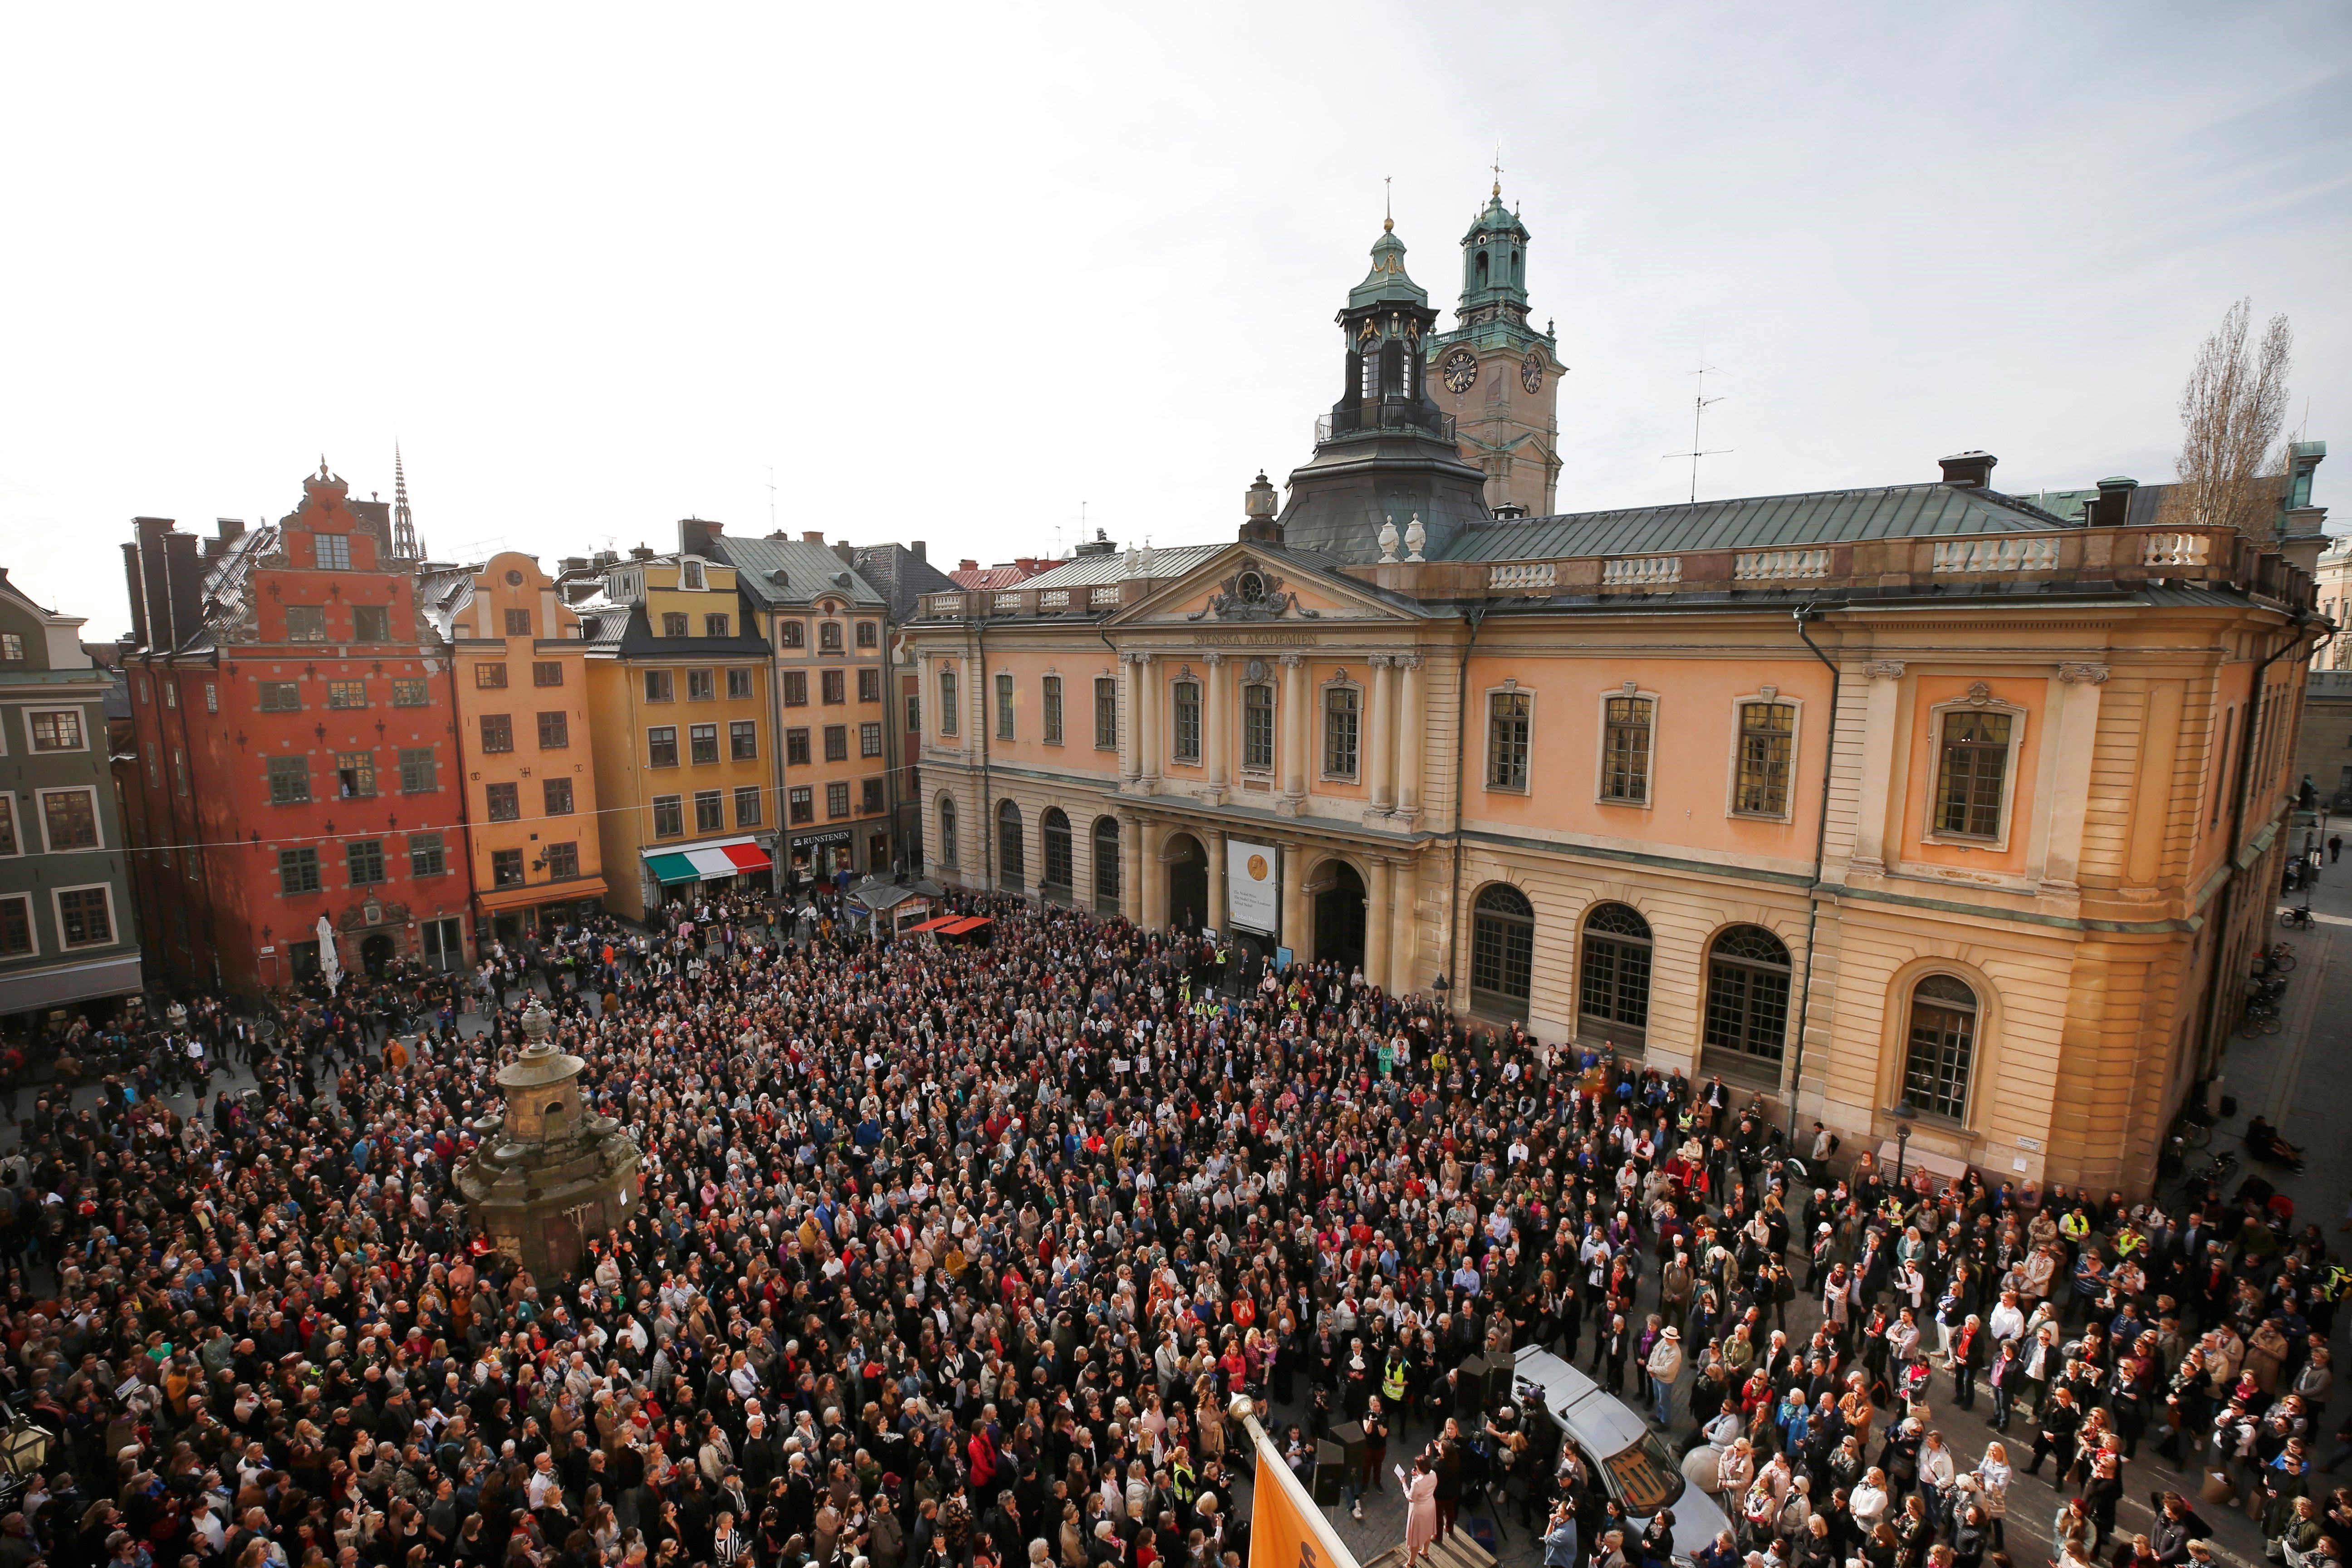  La Academia Sueca anuncia reformas tras escándalos de abuso y filtraciones